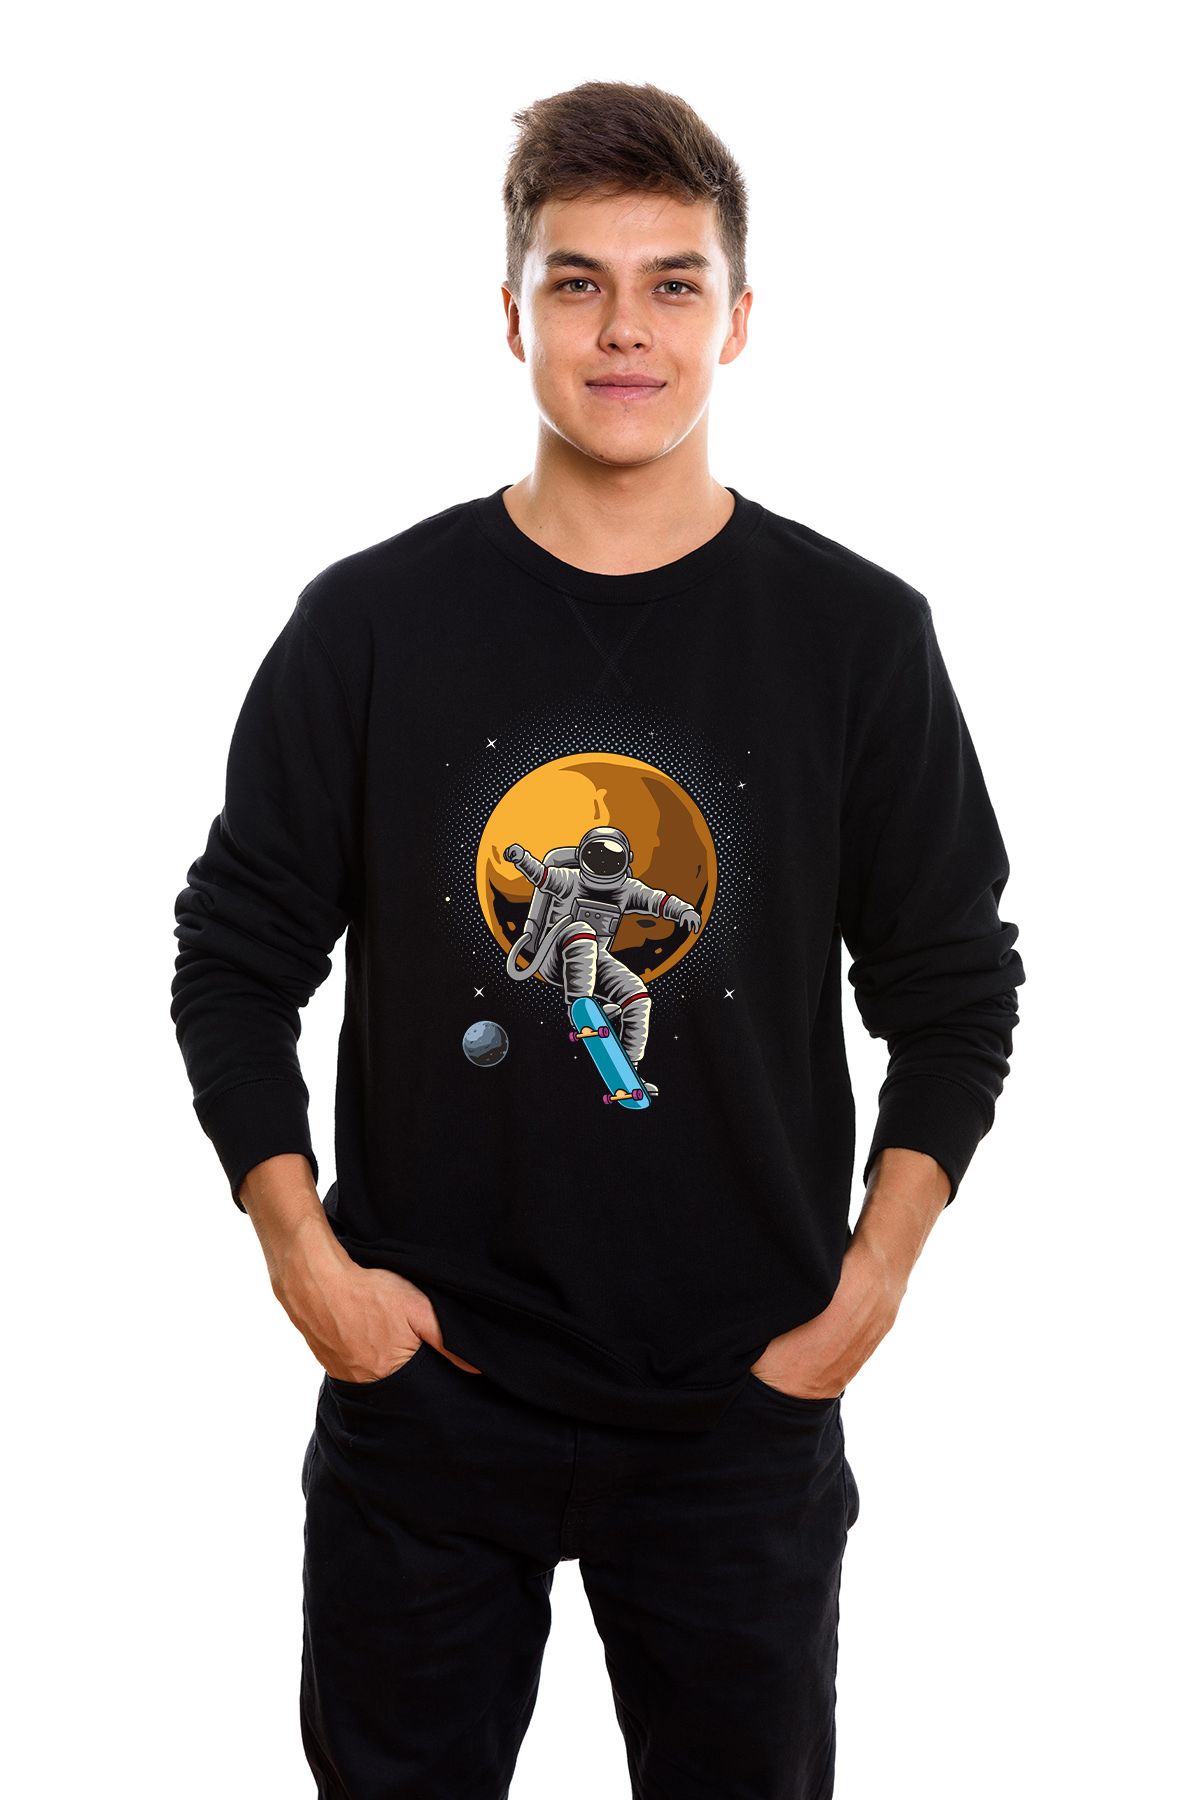 ADA BEBEK ÇOCUK Pamuklu Maceracı Astronot Tarz Erkek Sweatshirt